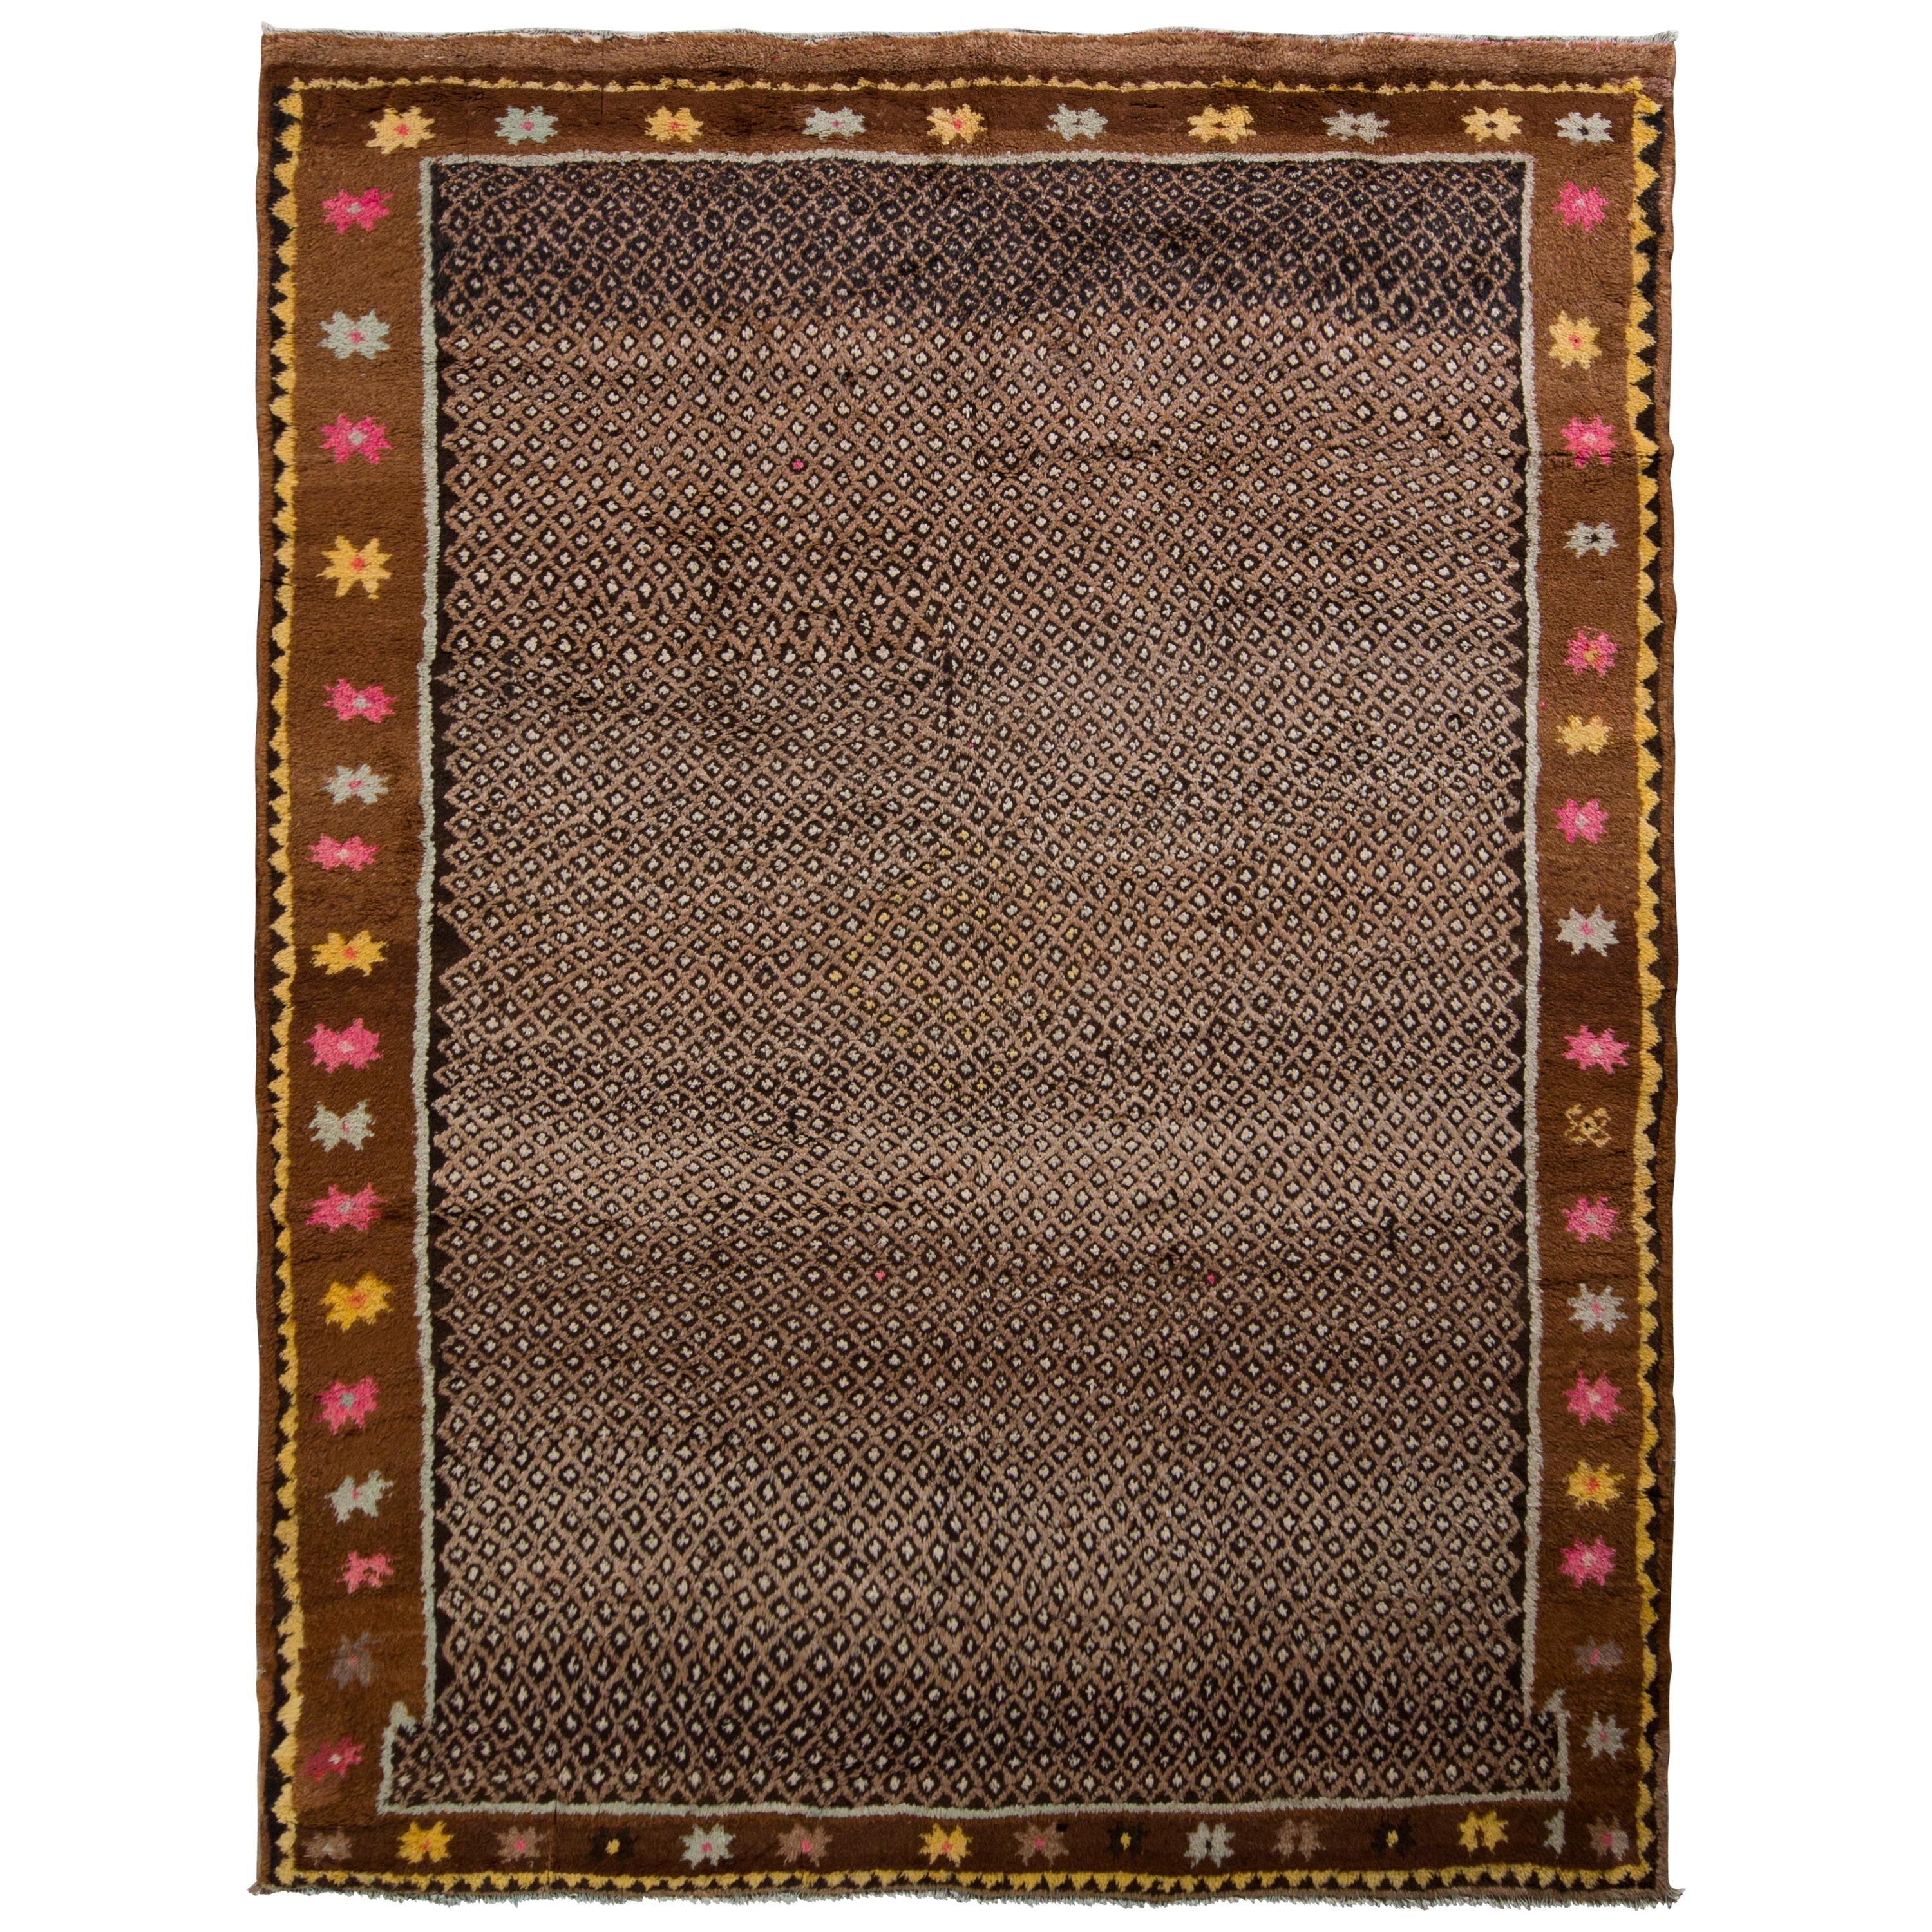 Handgeknüpfter türkischer Vintage-Teppich in Beige-Braun mit geometrischem Muster von Teppich & Kelim